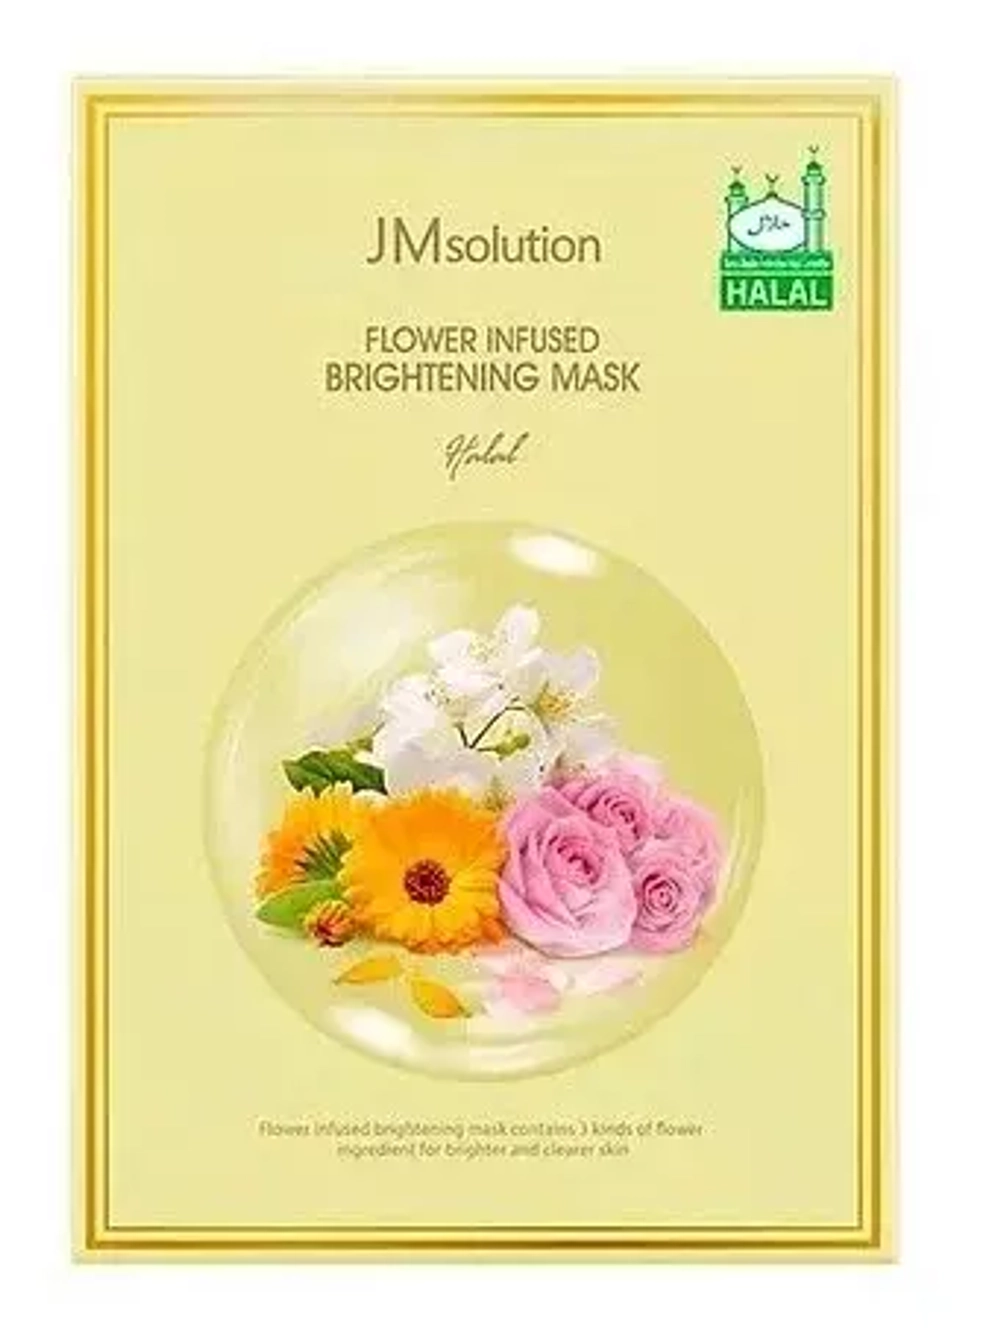 Маска тканевая с экстрактом цветов JMsolution Flower Infused Brightening Mask, 30 мл